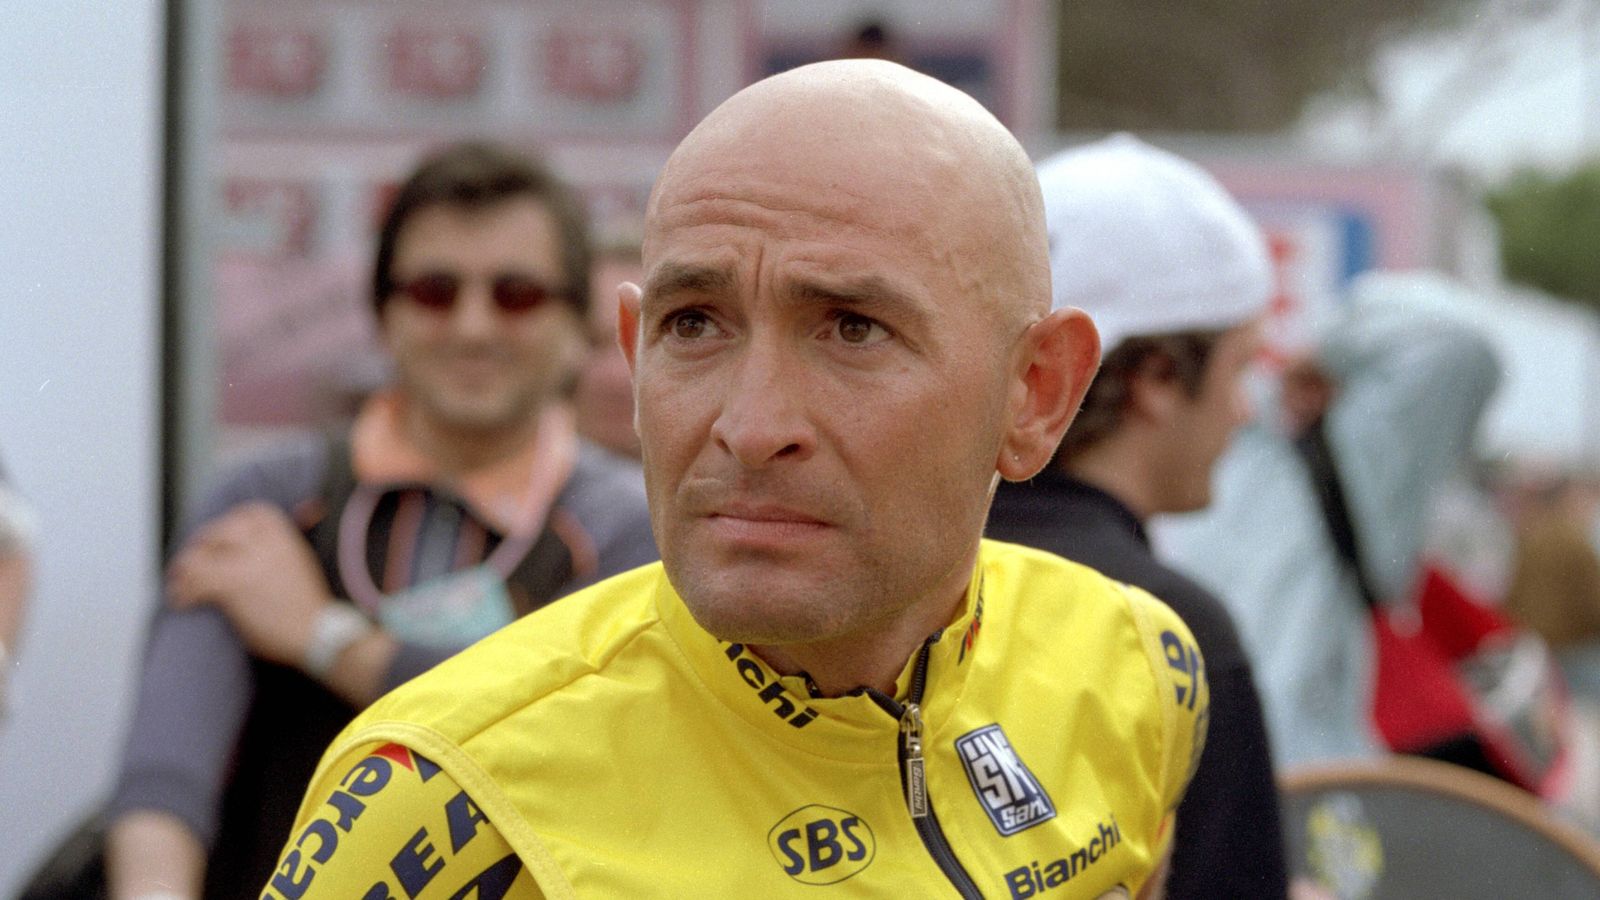 Marco Pantani, en una imagen de archivo.